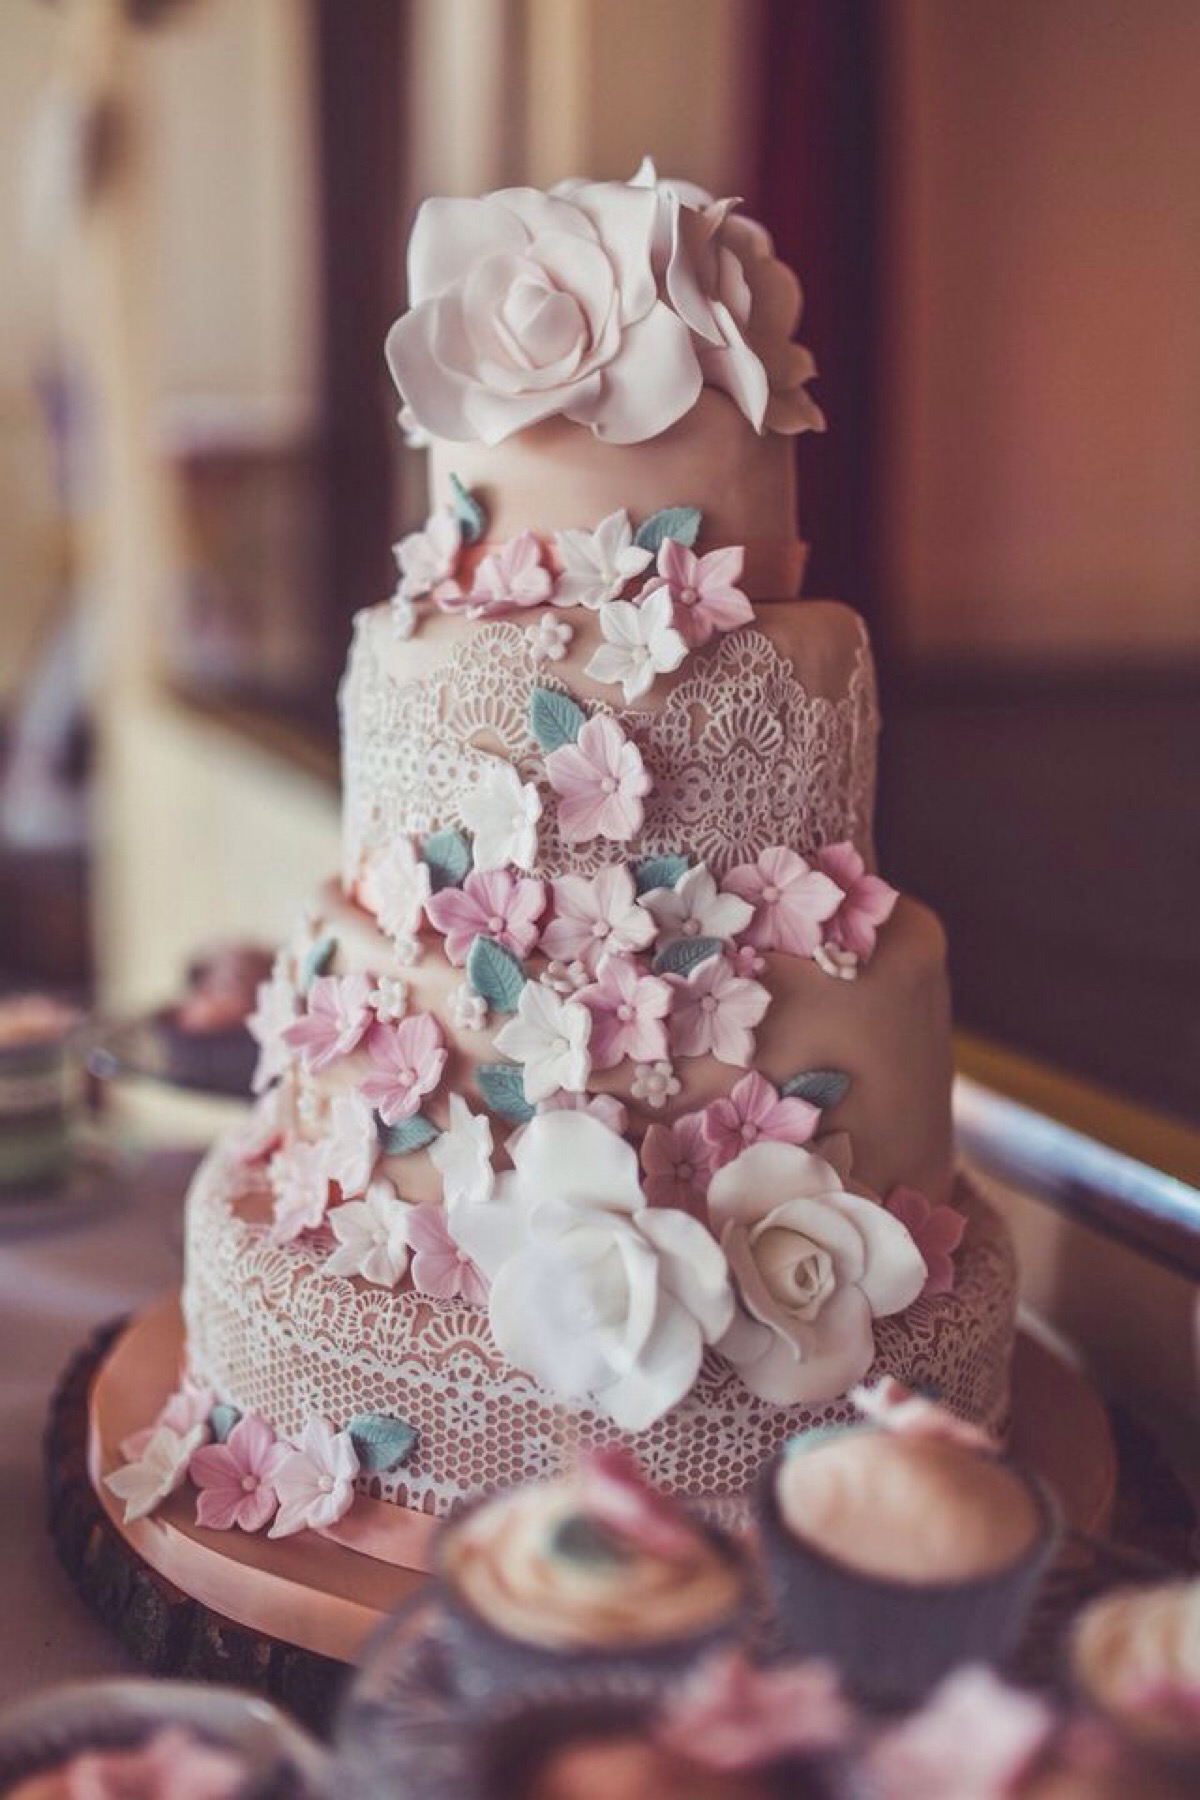 漂亮的婚礼蛋糕图片,高清图片,食物-纯色壁纸